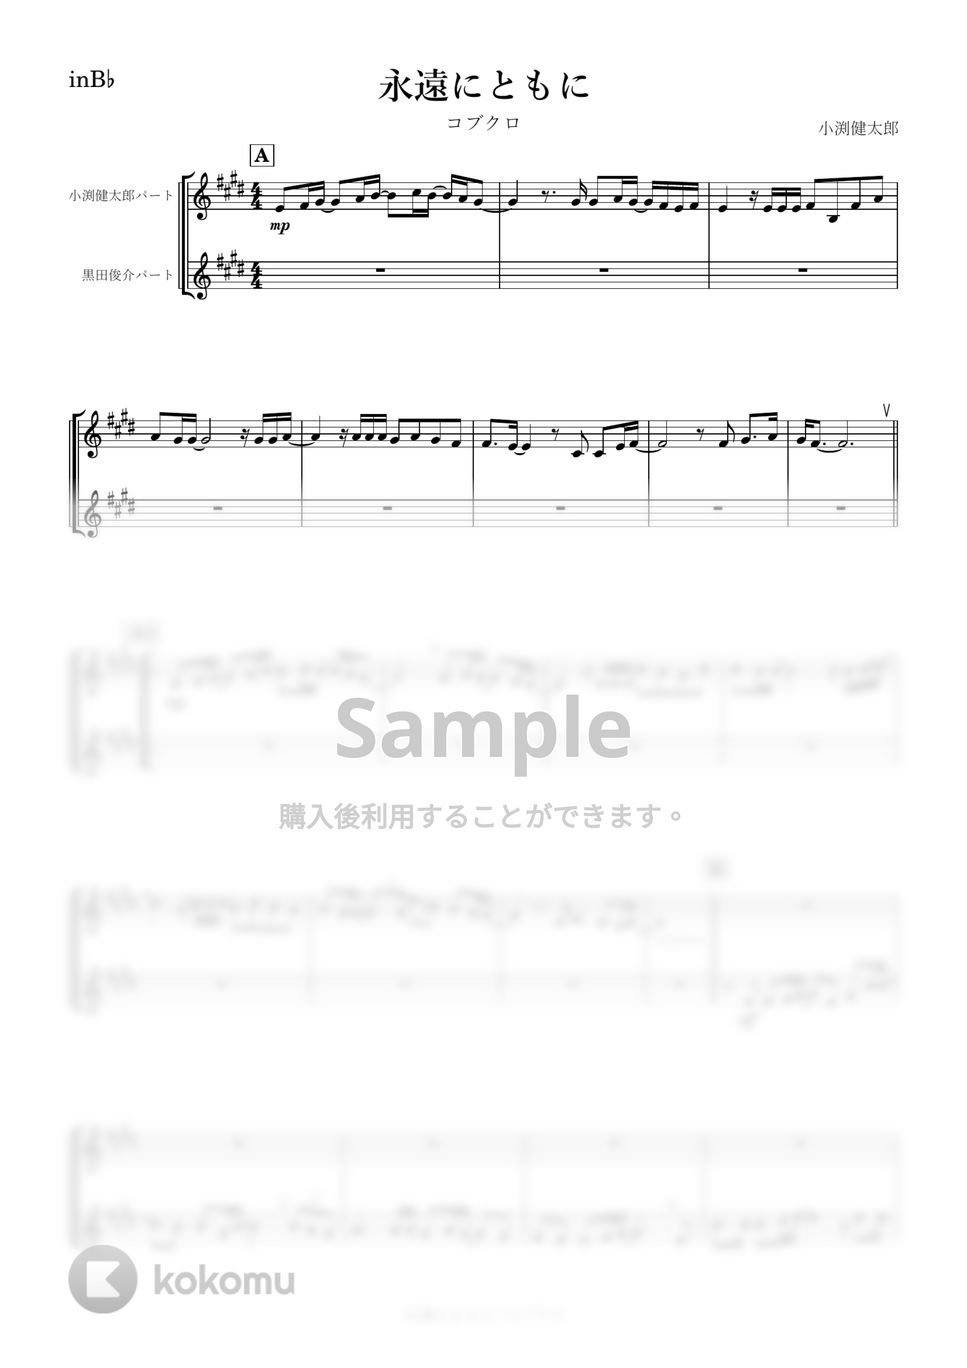 コブクロ - 永遠にともに (B♭) by kanamusic